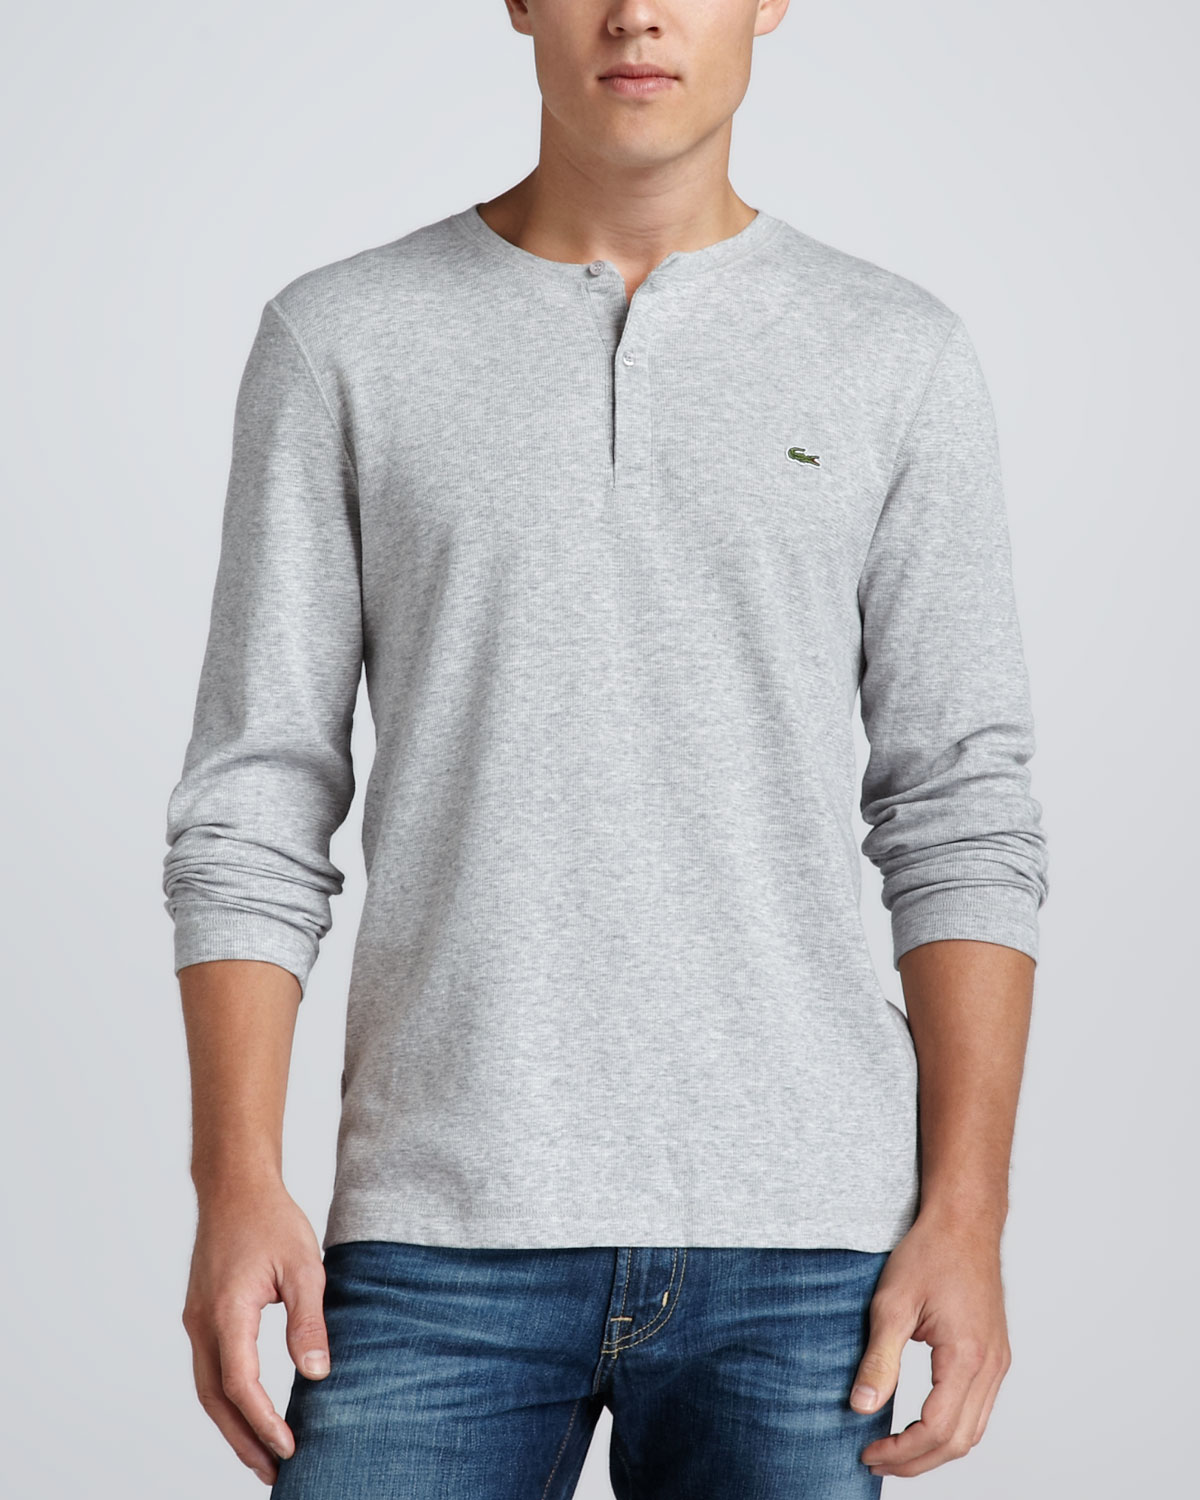 Lyst - Lacoste Waffleknit Longsleeve Henley Shirt Gray in Gray for Men